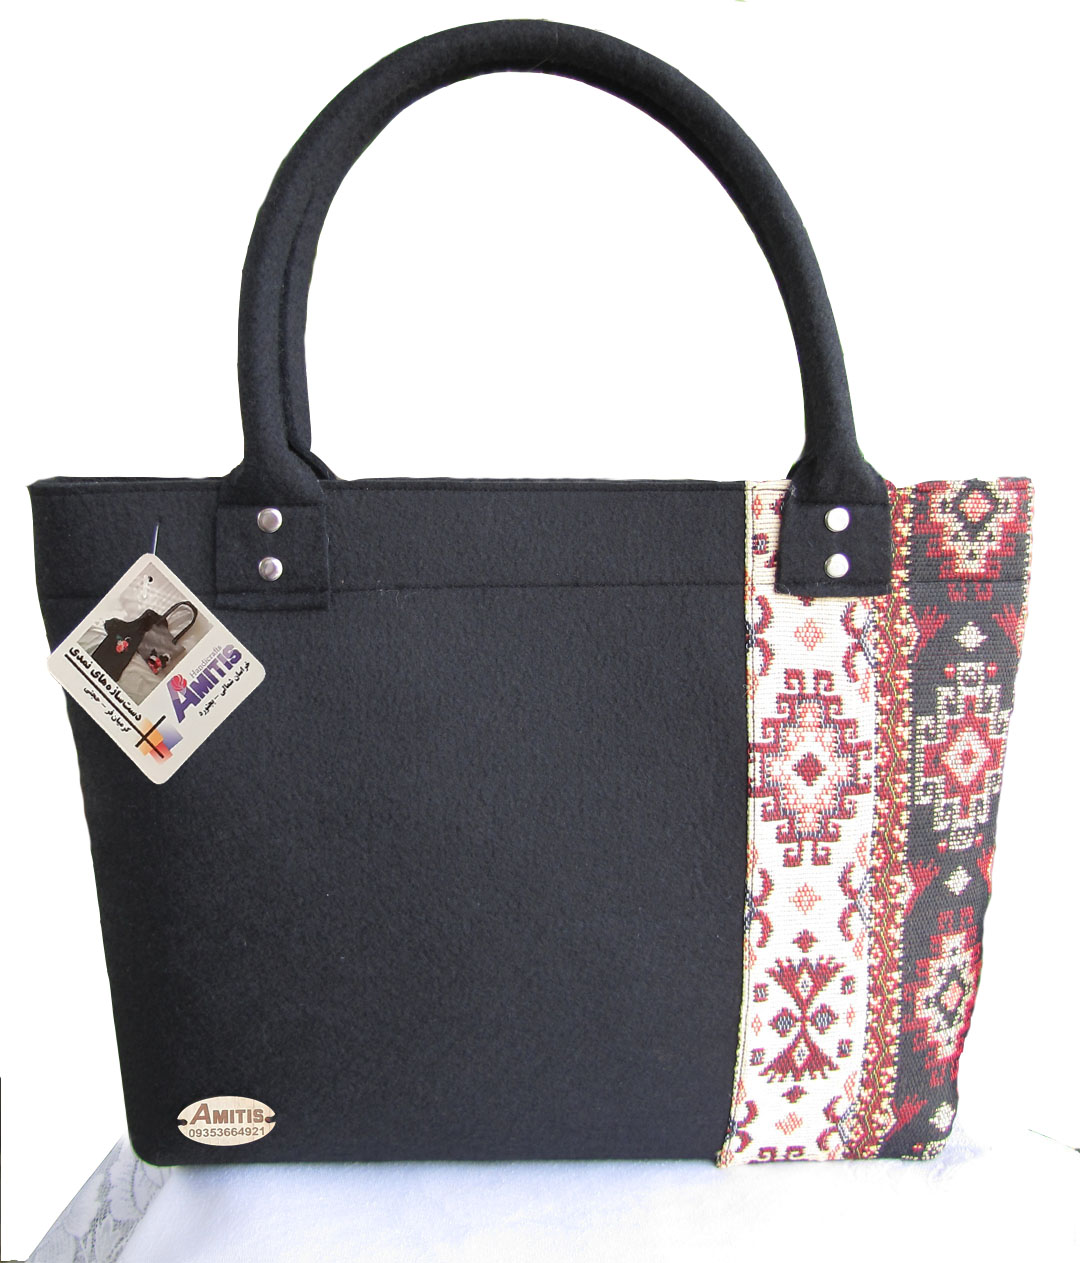 Amitis bag with tarang design